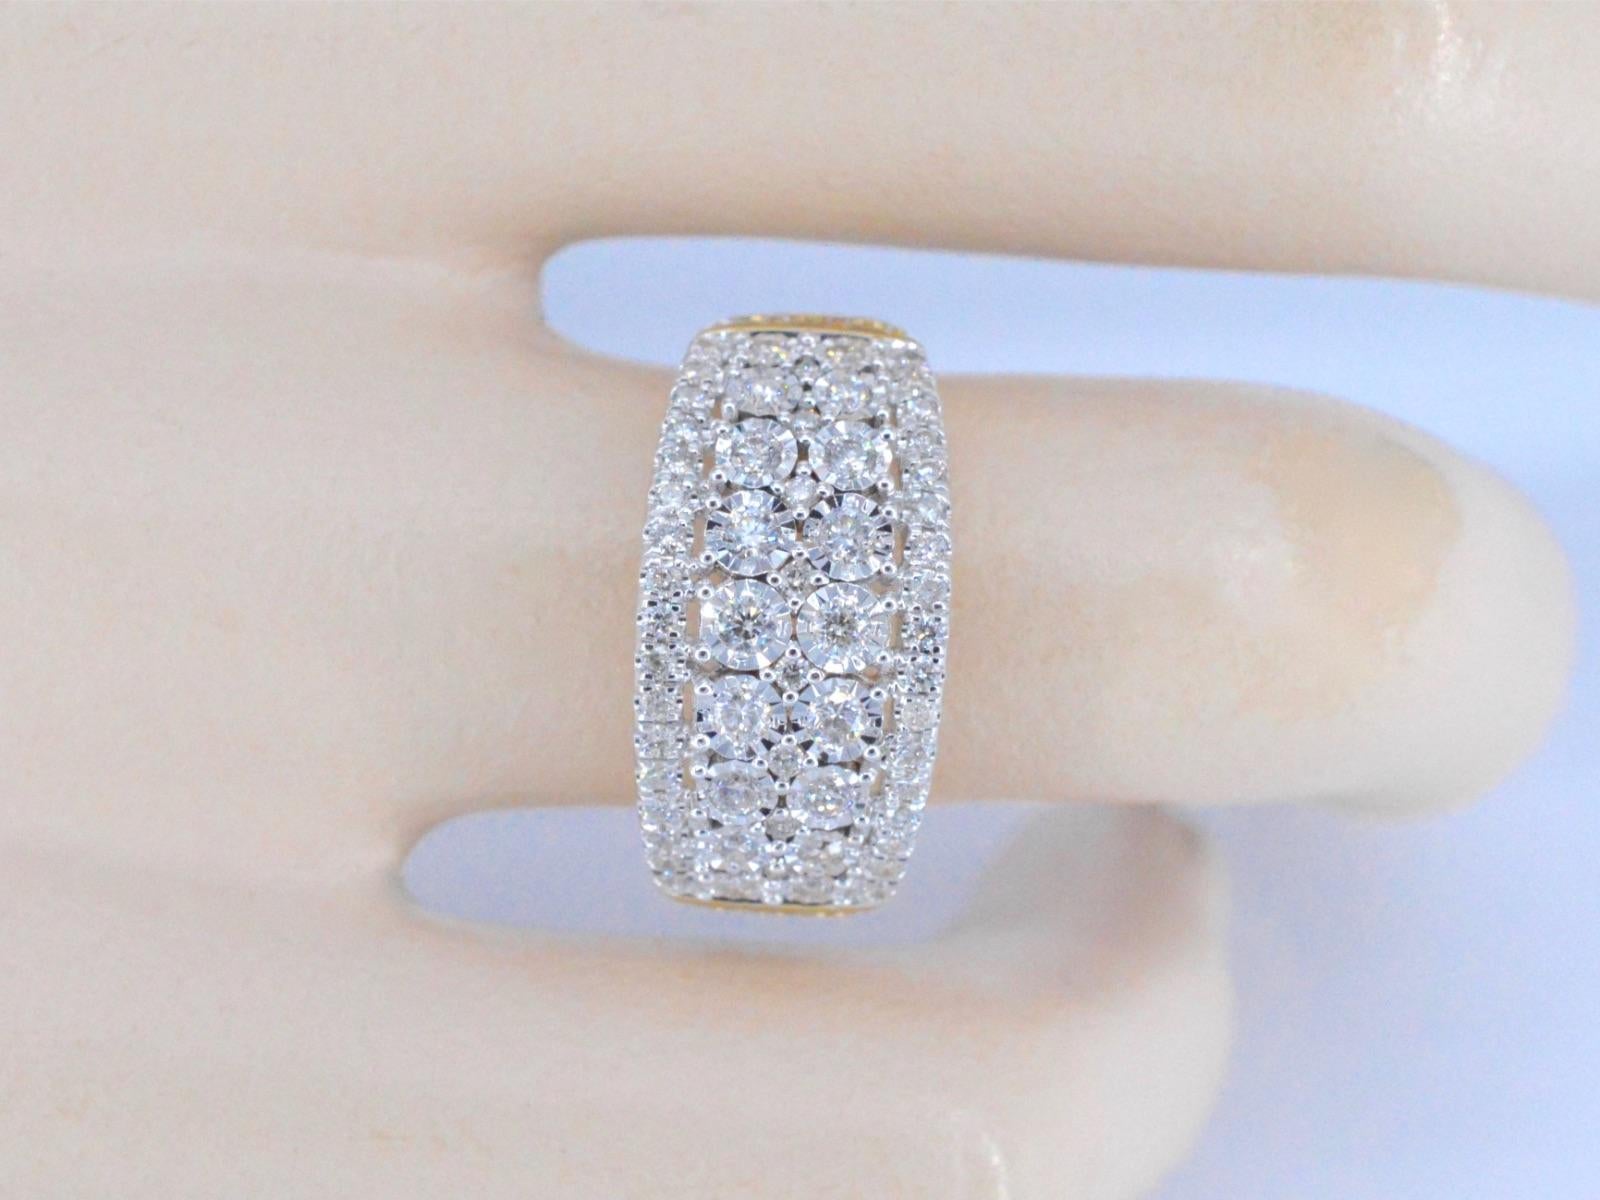 Une bague design/One en or 14 carats avec 1,00 carat de diamants taille brillant est un bijou éblouissant qui respire le luxe et la sophistication. La bague est composée d'un anneau en or 14 carats, connu pour sa durabilité et sa beauté